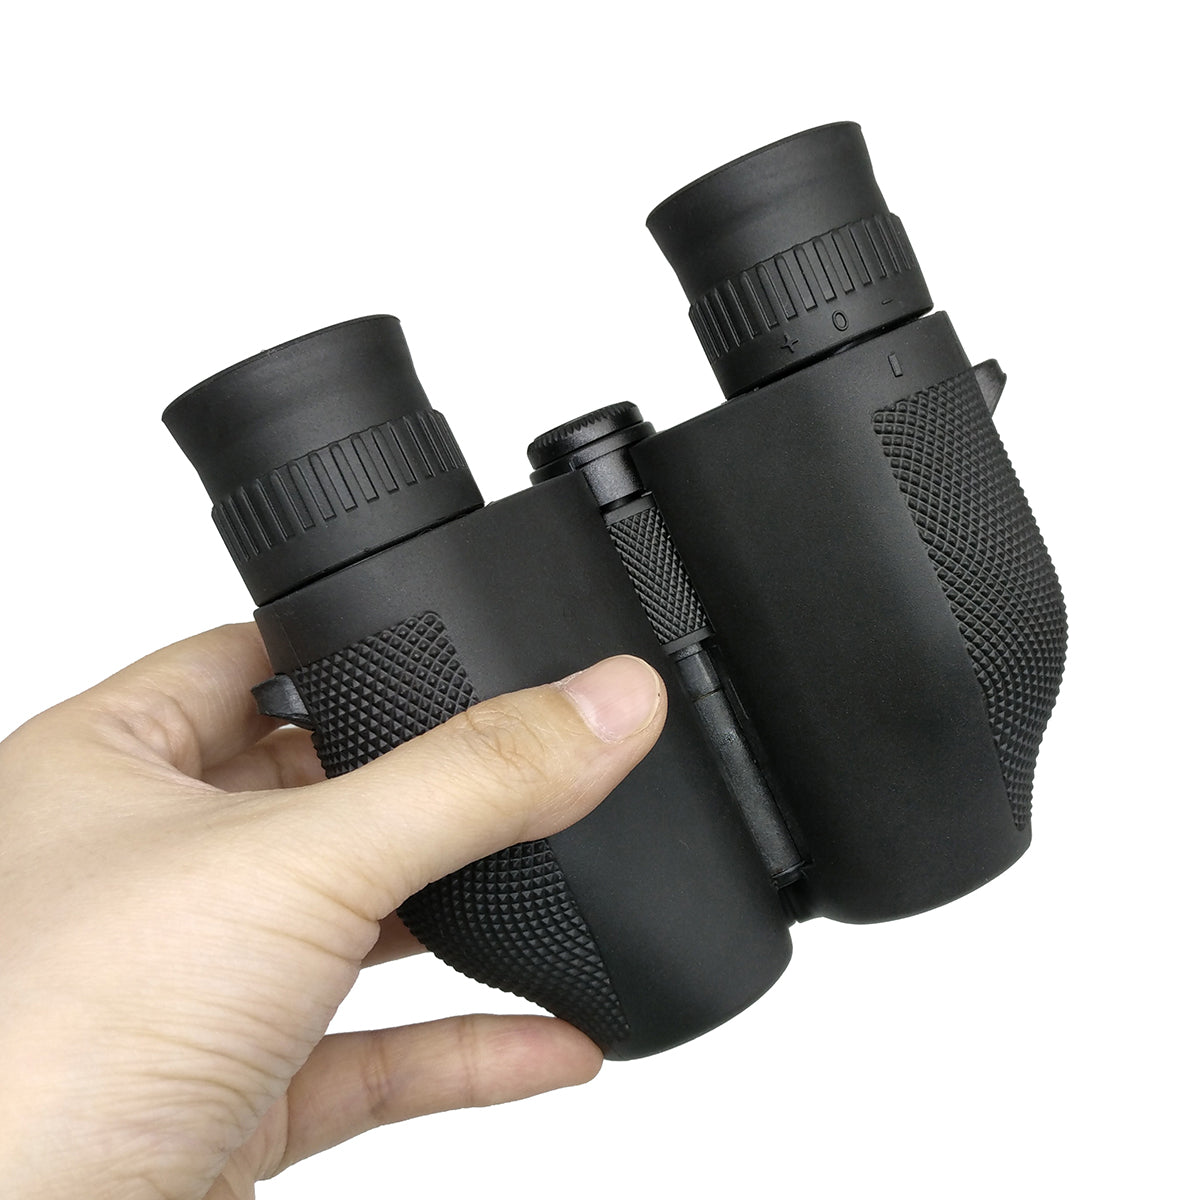 Best binoculars